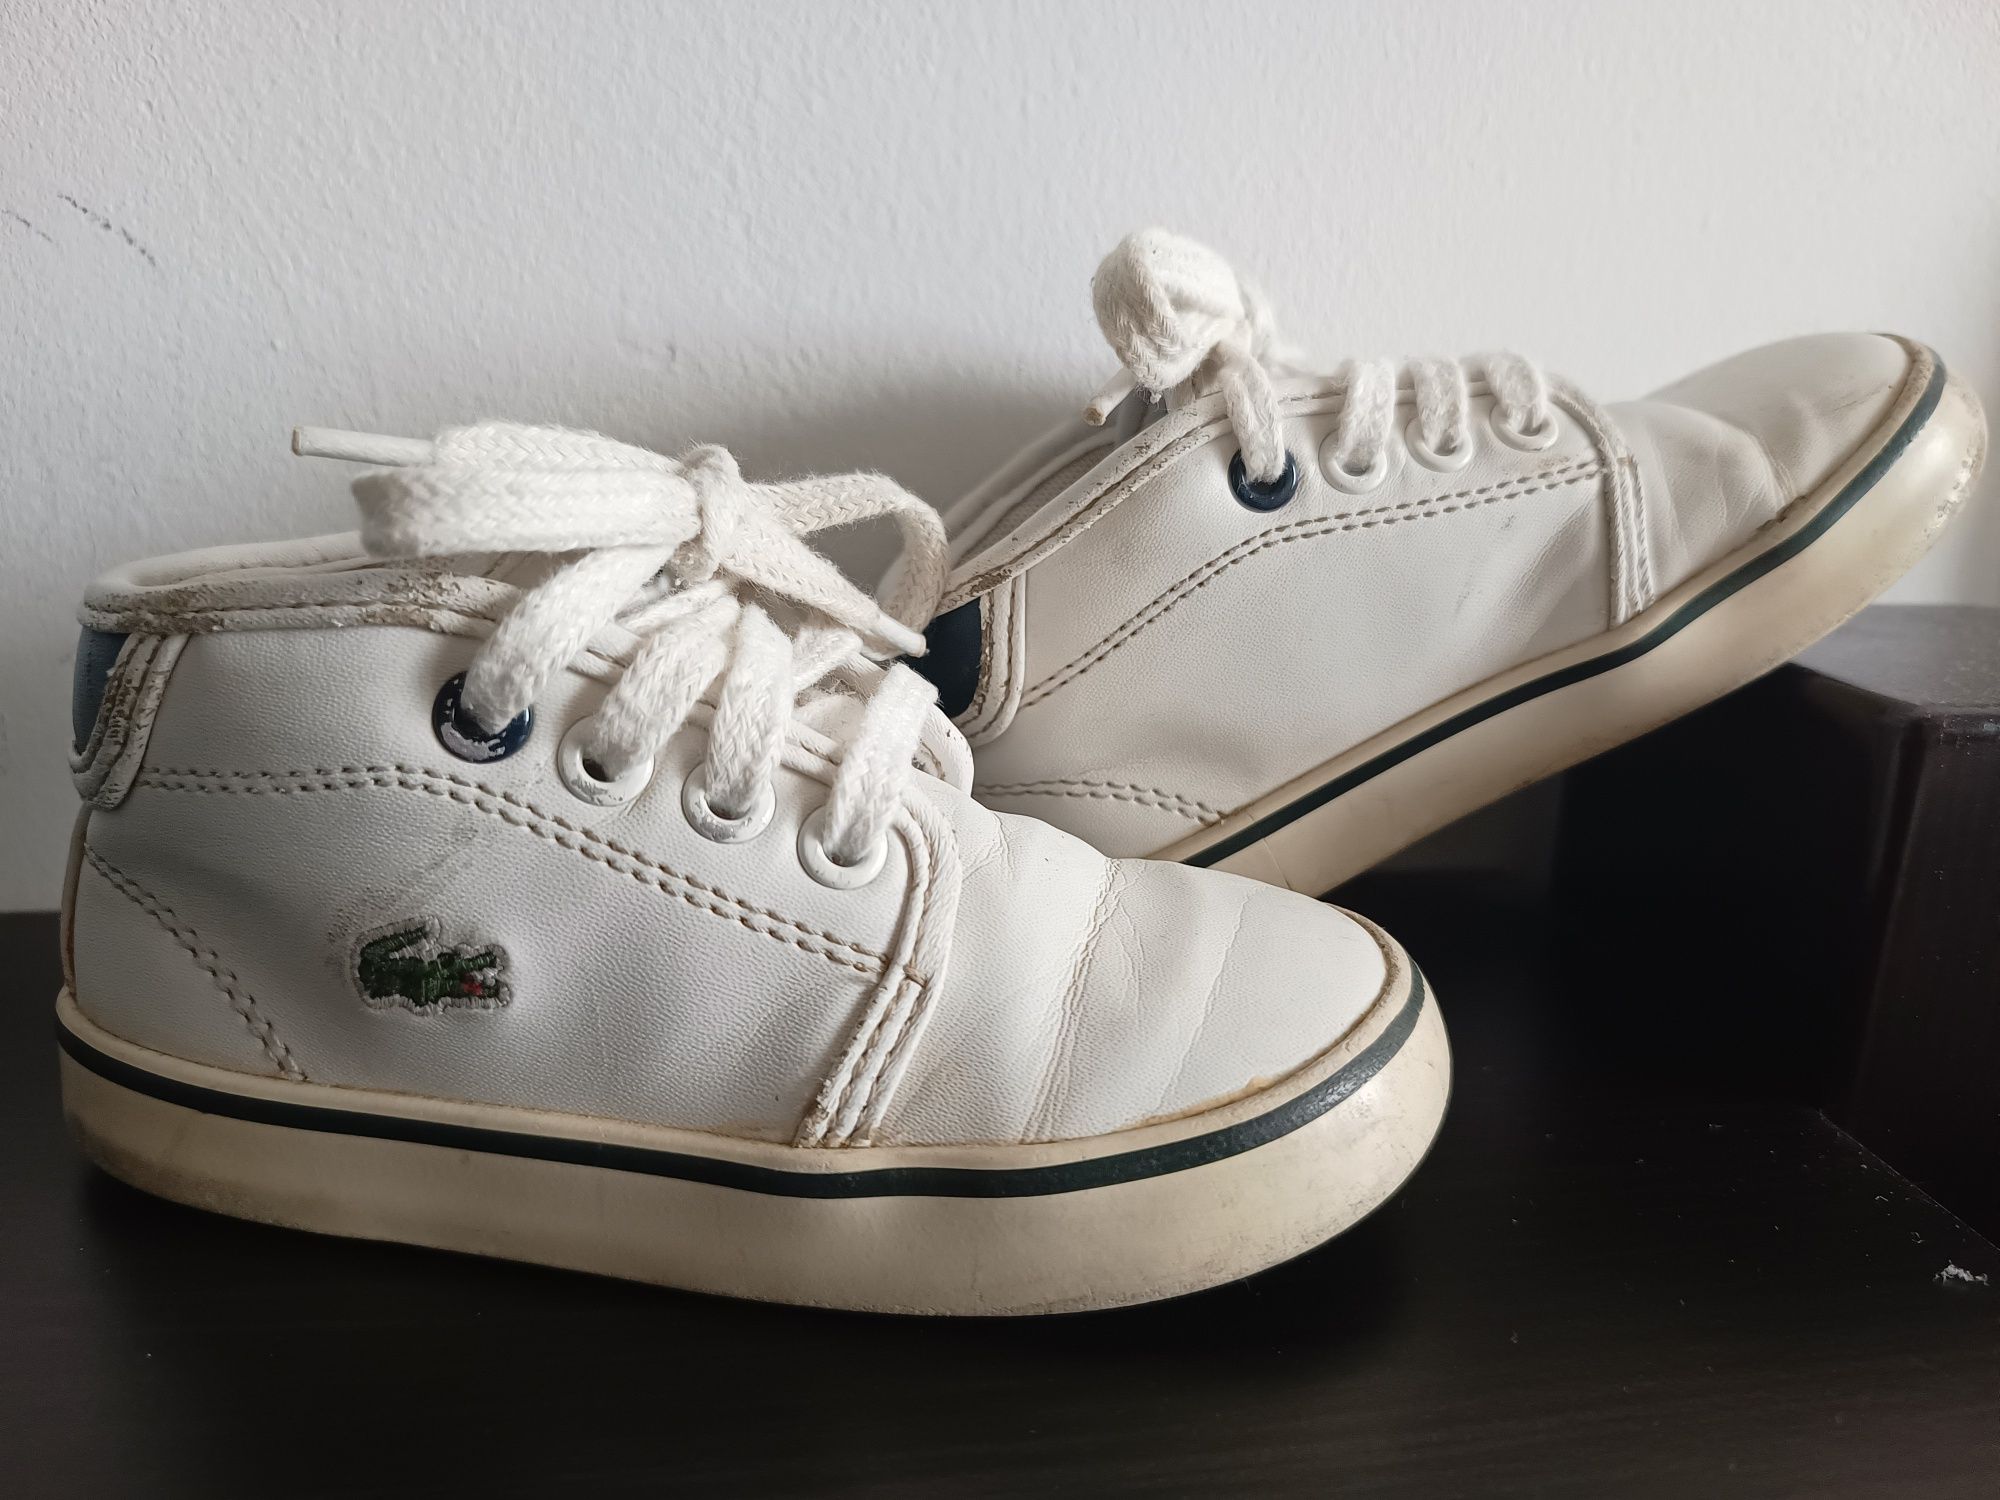 Buty Lacoste białe skórzane wkładka 14 cm